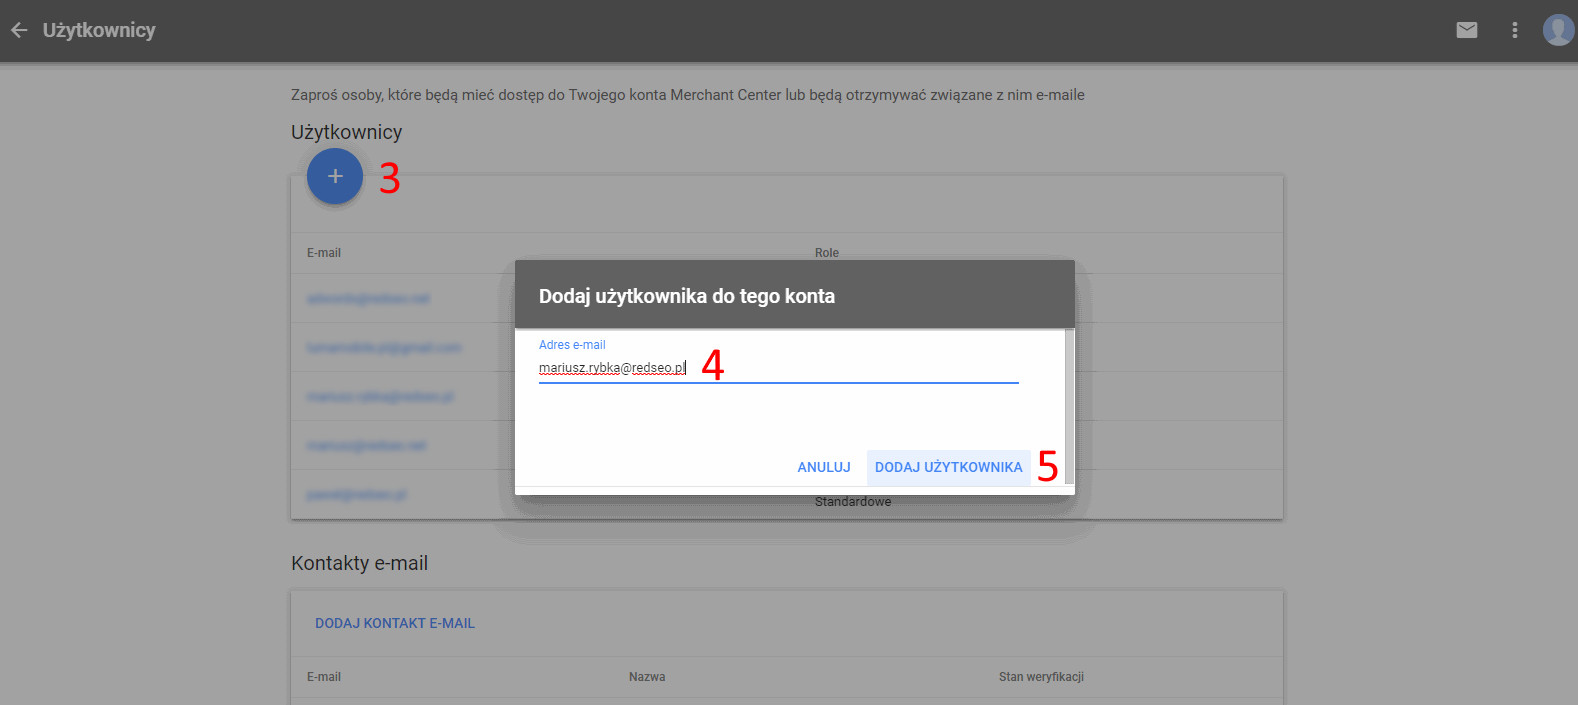 Google Merchant Center - dodawanie nowego użytkownika